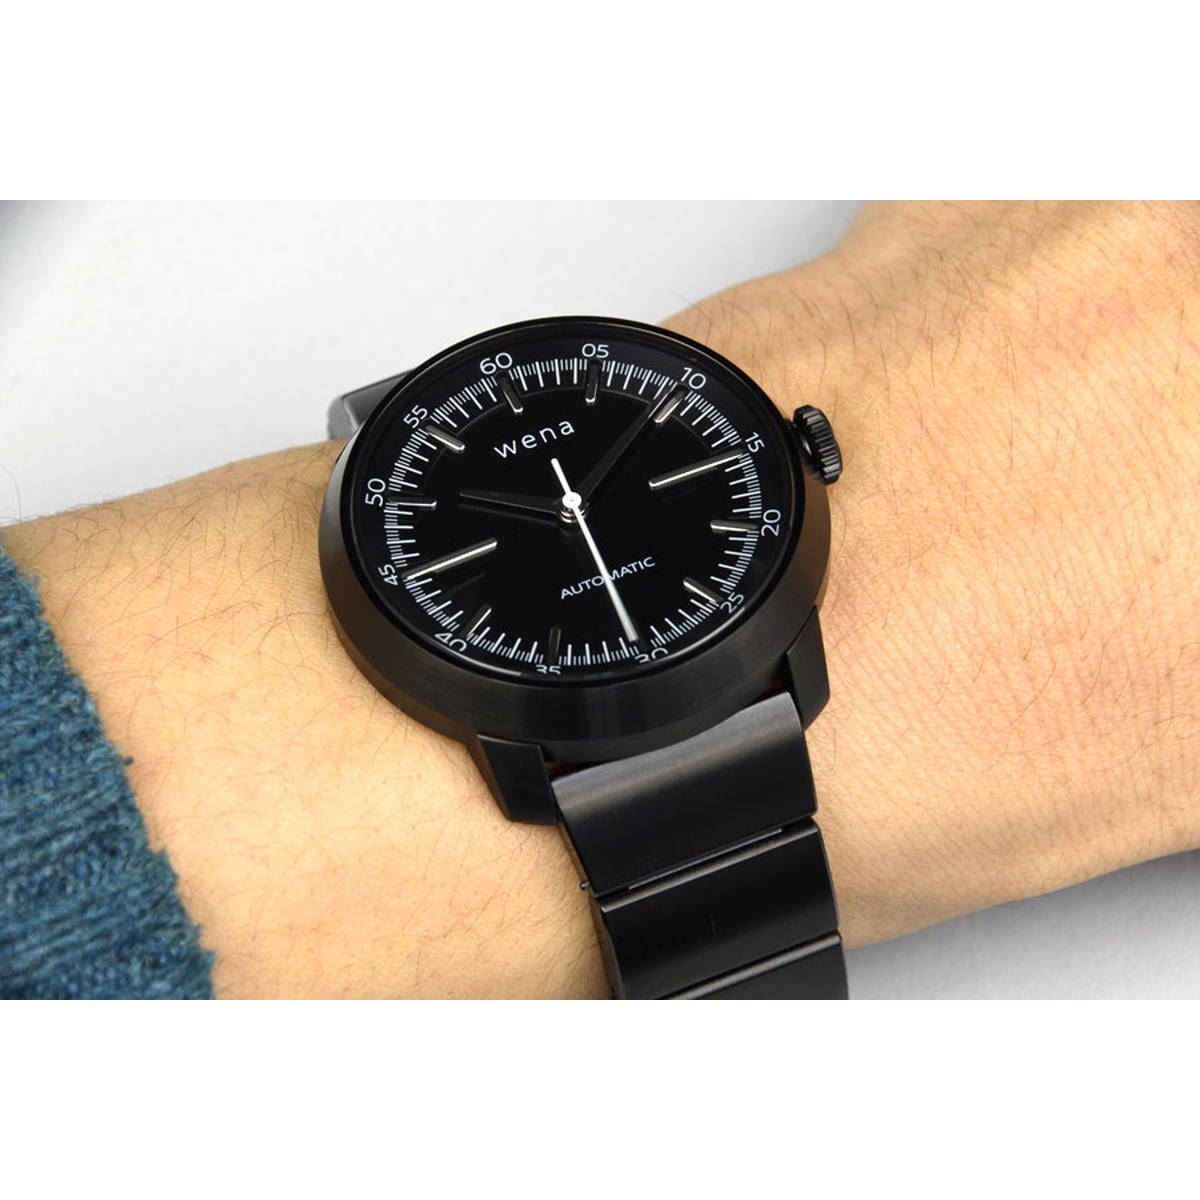 ソニーのスマートウォッチ「wena wrist pro」とシチズン製機械式時計は ...